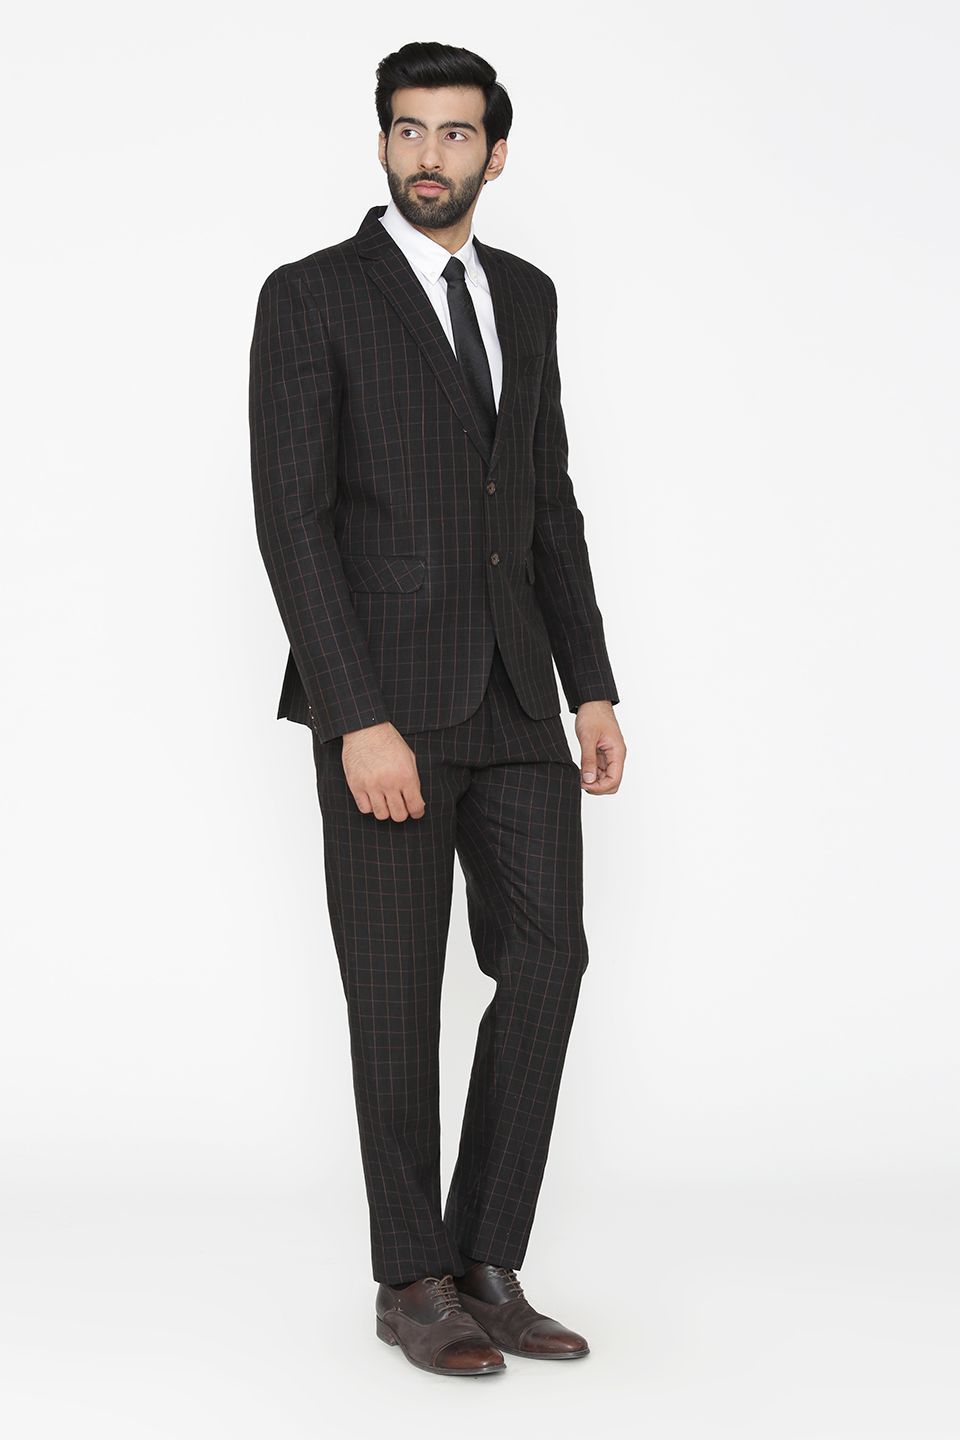 100% Pure Linen by Linen Club Black Suit